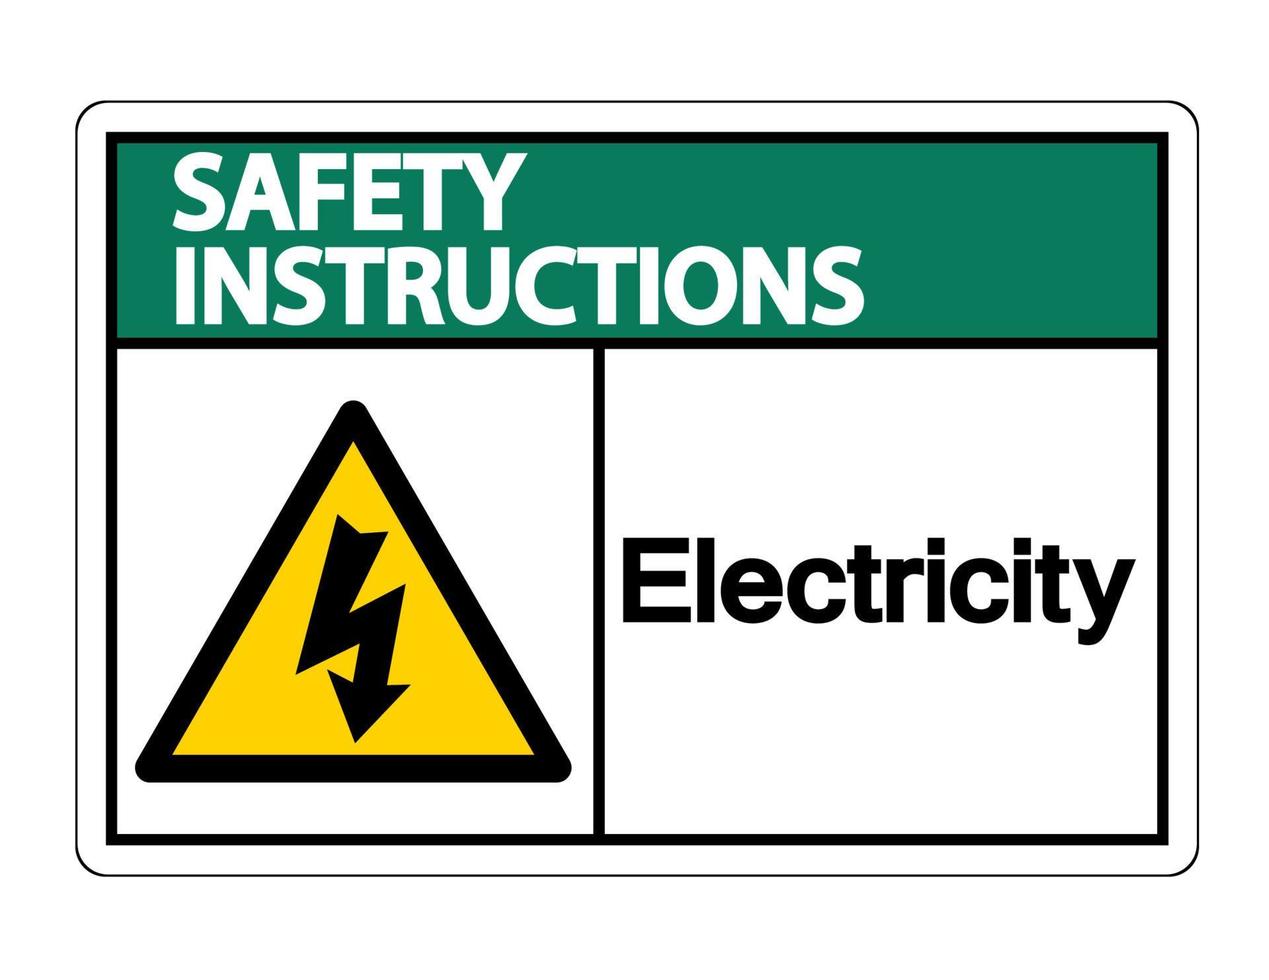 veiligheidsinstructies elektriciteitssymbool teken op witte achtergrond vector